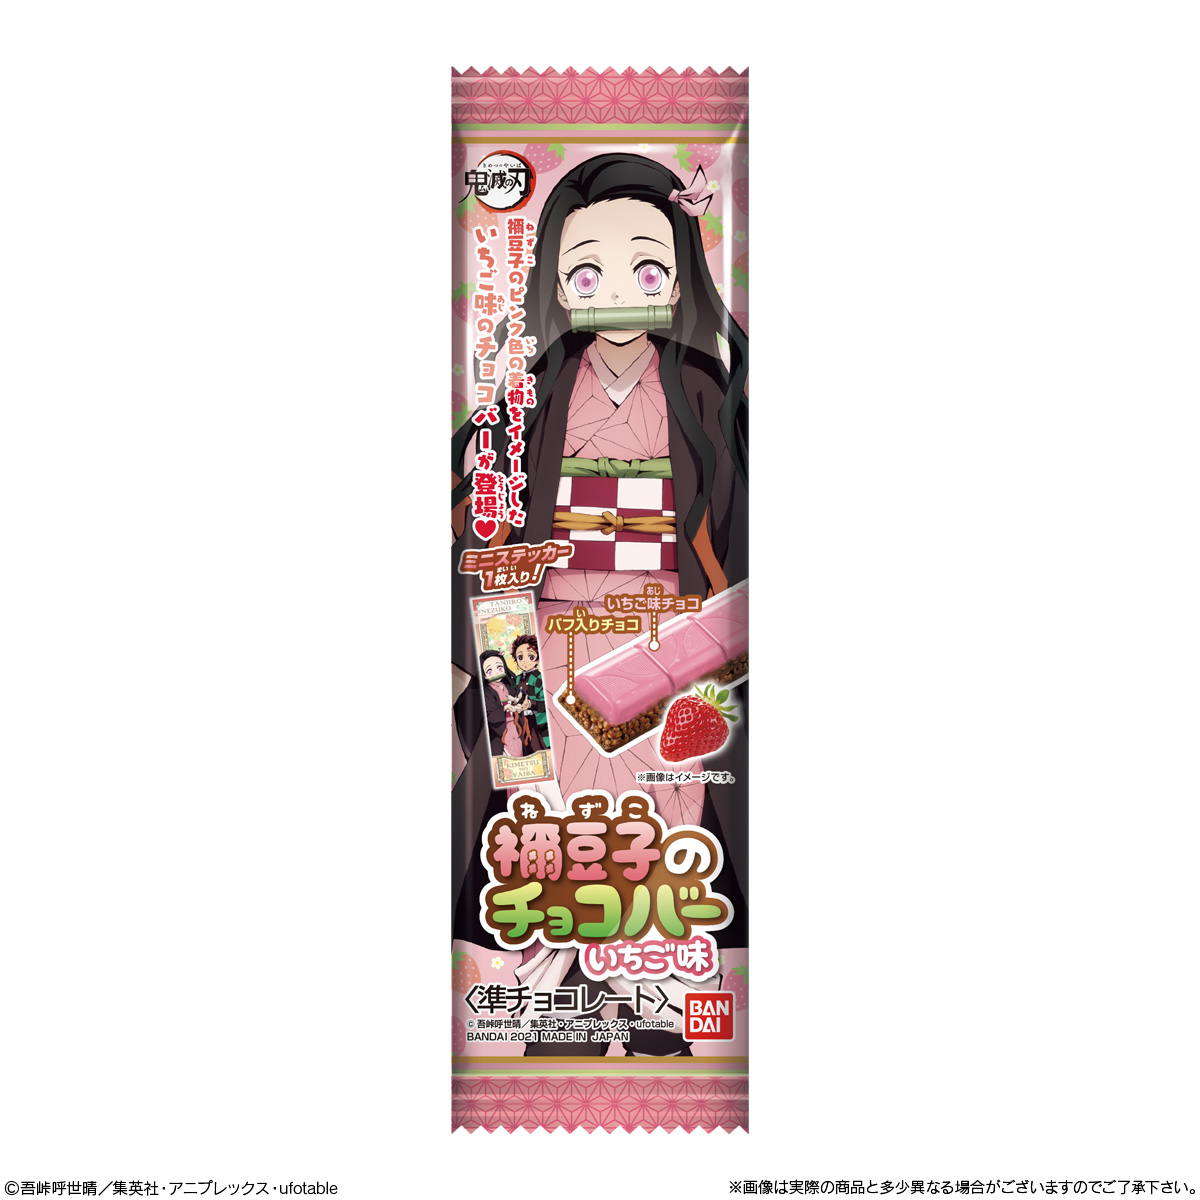 【食玩】鬼滅の刃『鬼滅の刃 禰豆子のチョコバー いちご味』10個入りBOX-006